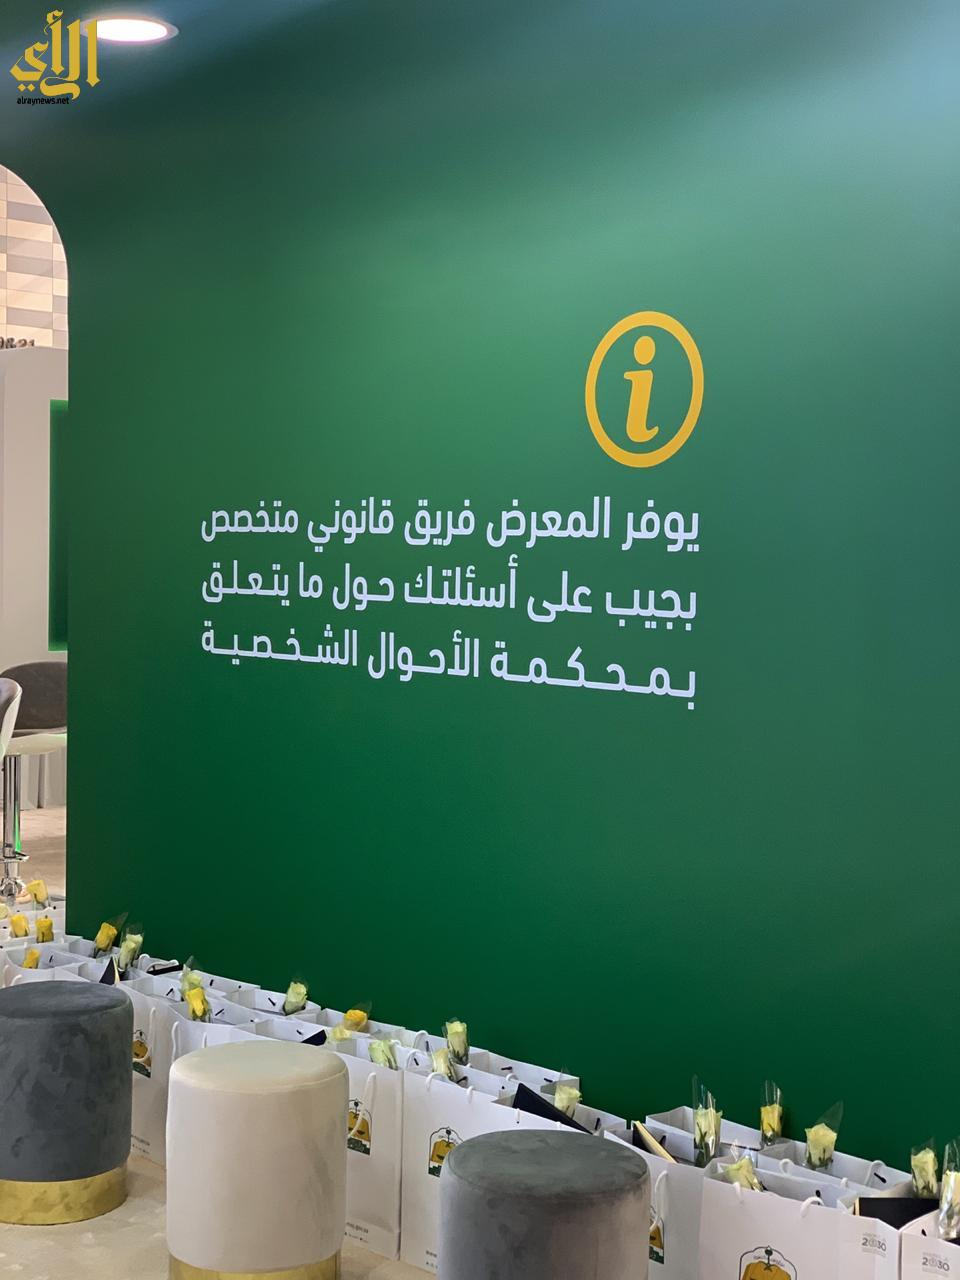 وزارة العدل تطلق معرض الثقافة العدلية بجامعة الملك سعود صحيفة